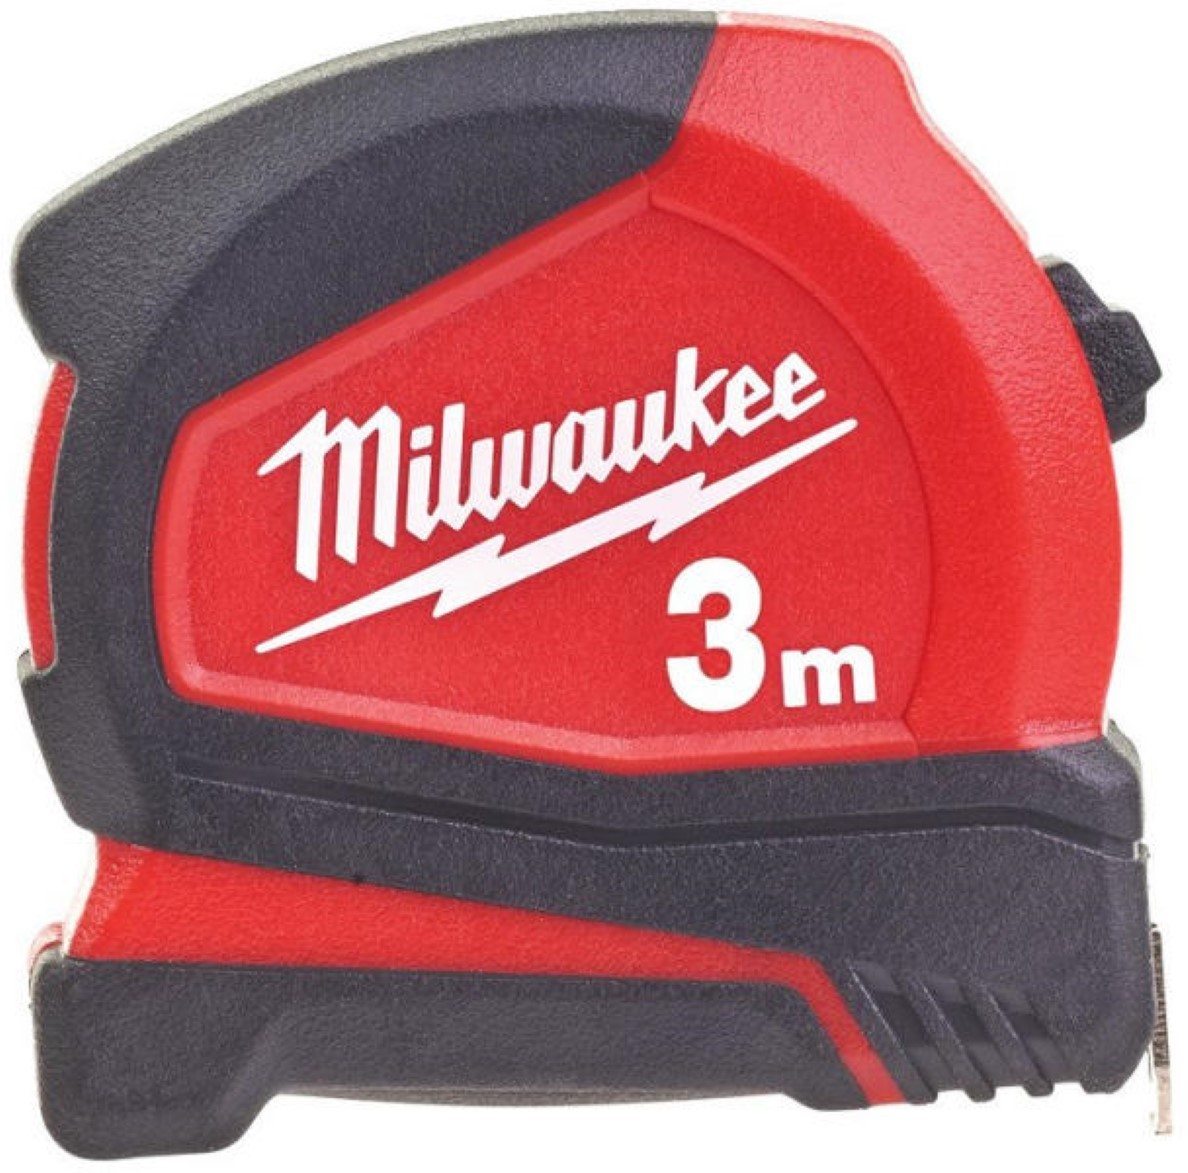 Milwaukee Taśma Miernicza 3m Pro Compact 4932459591 26724